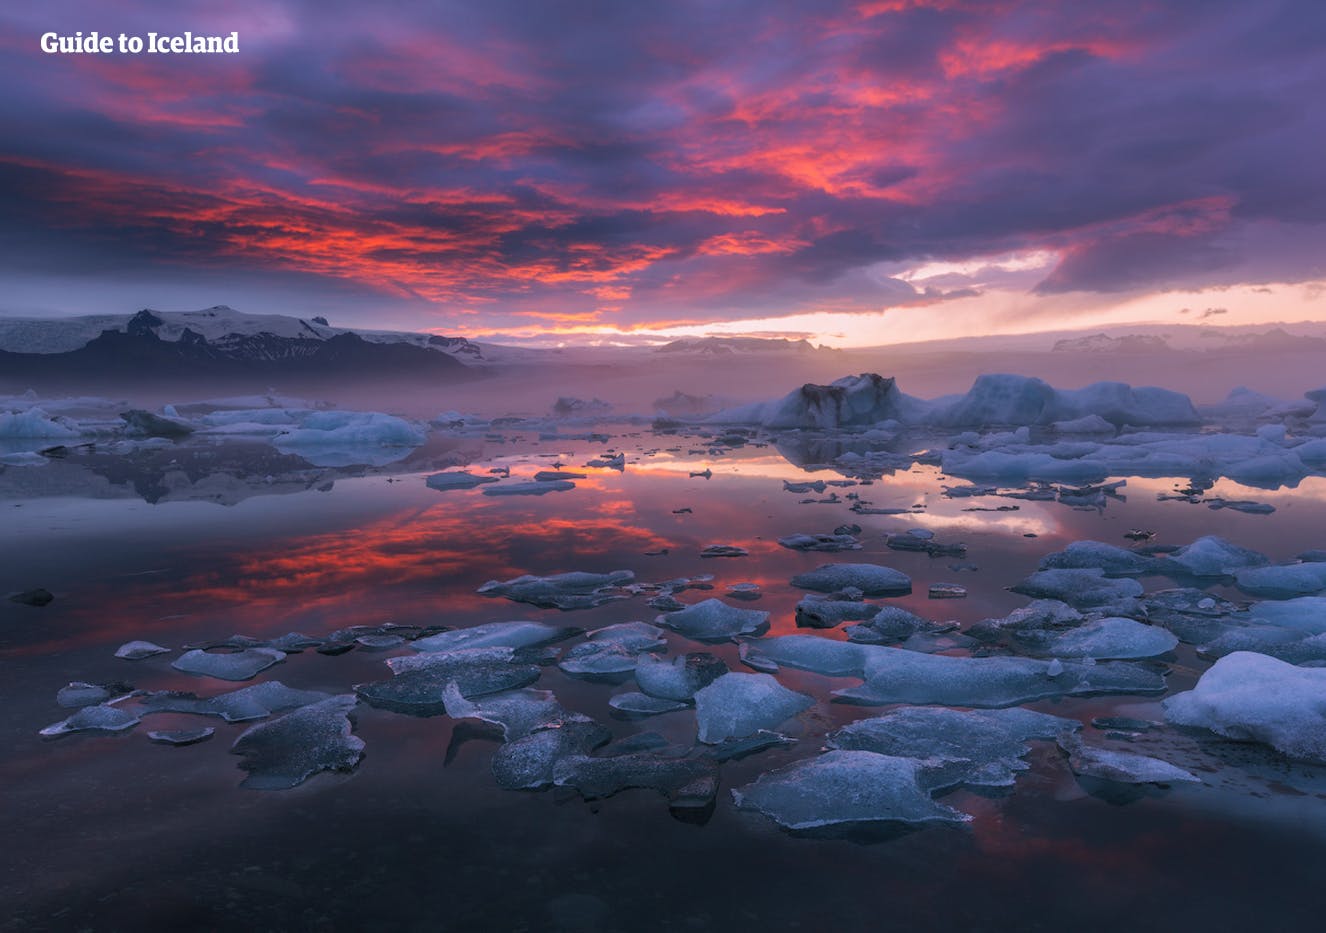 La laguna glaciar de Jökulsárlón es uno de los parajes naturales más hermosos de Islandia.